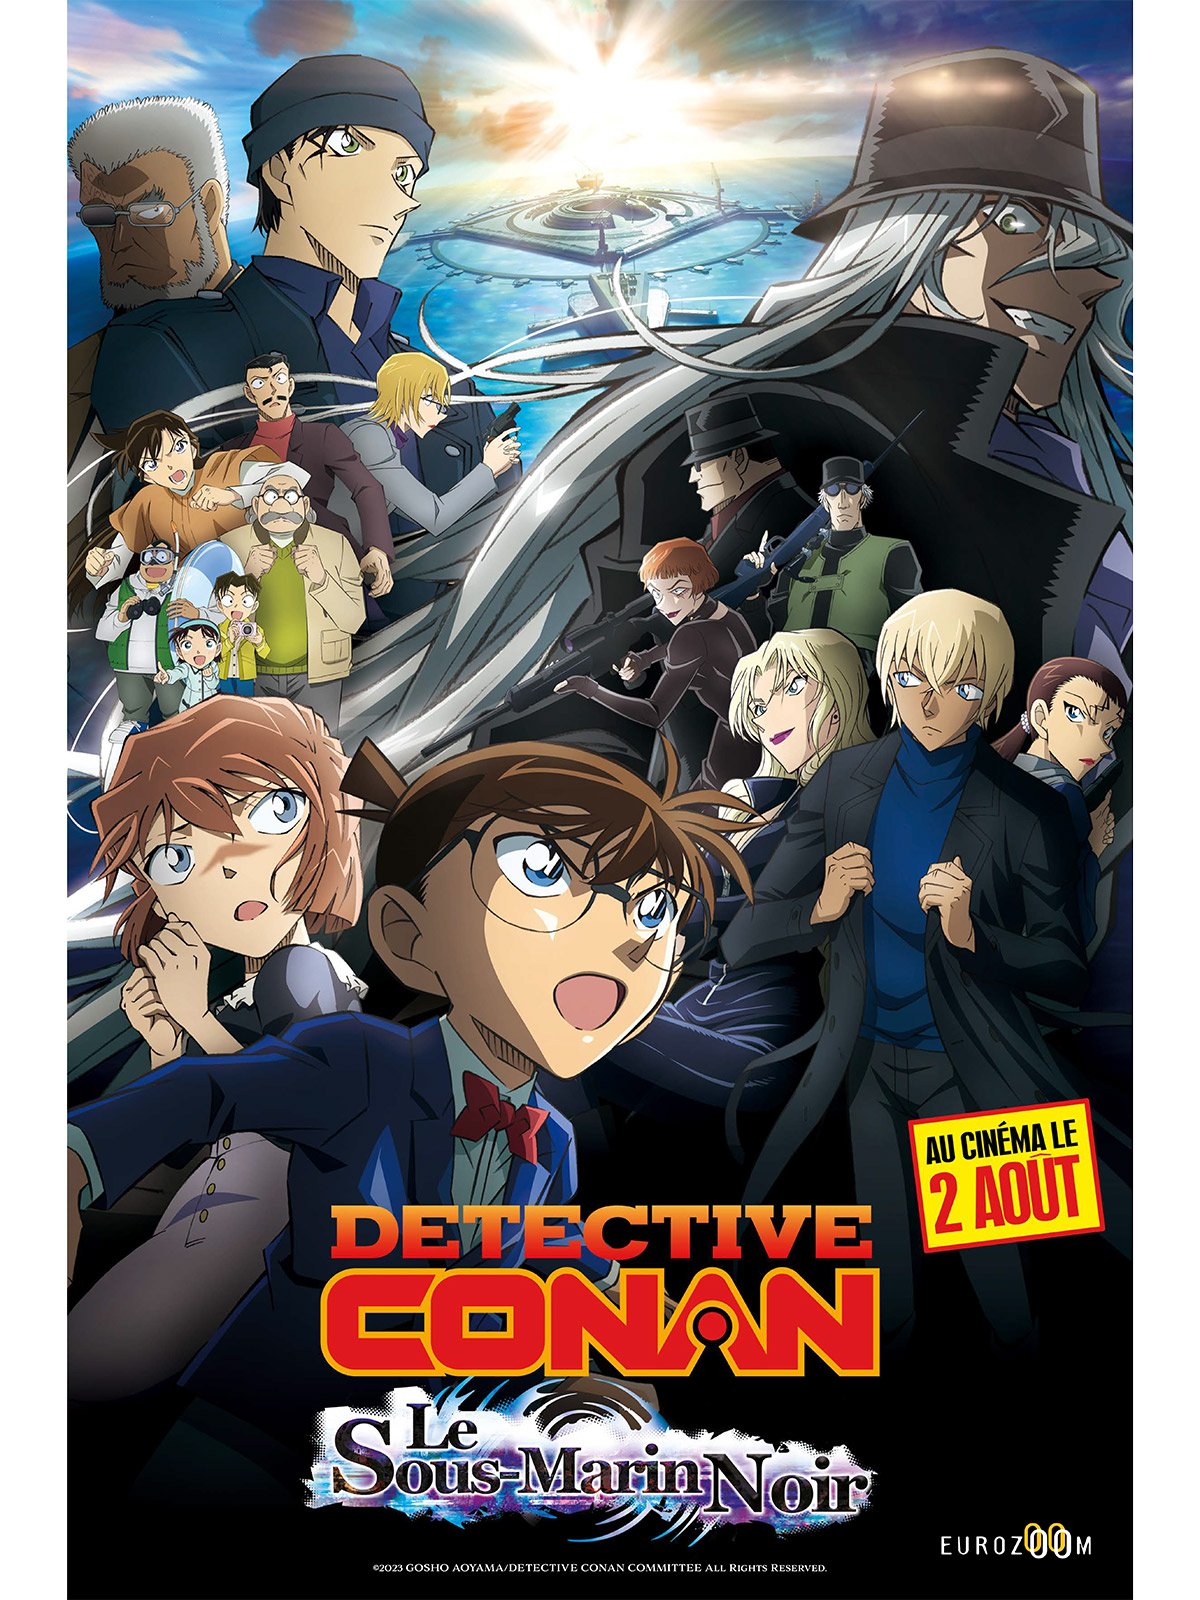 Détective Conan: le sous-marin noir - film 2023